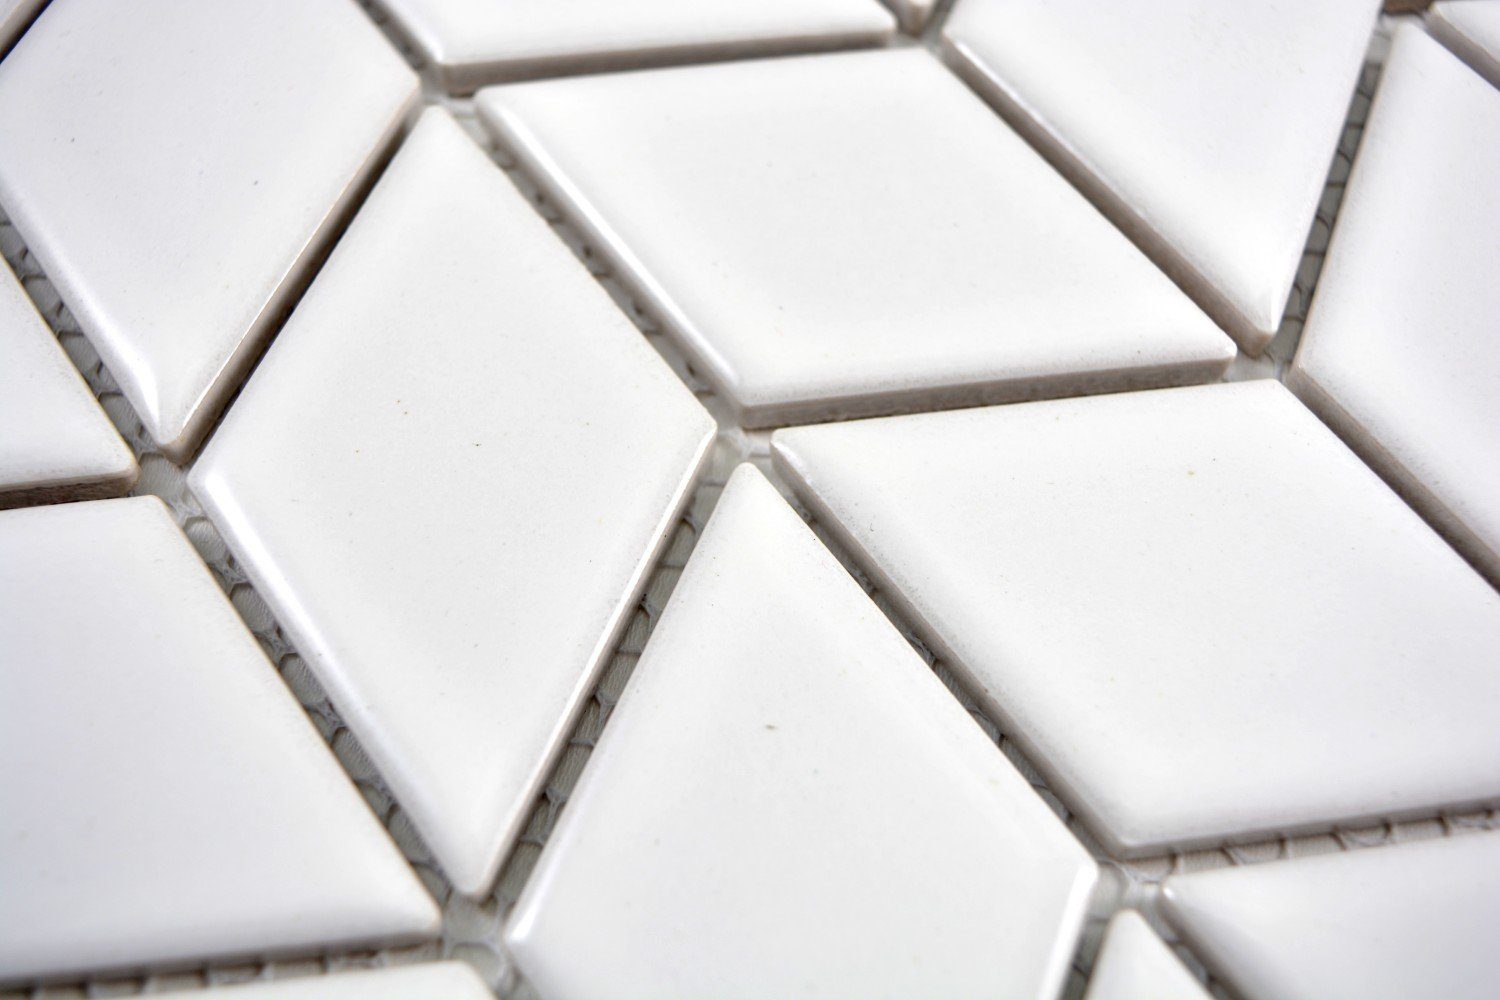 Mosani Mosaikfliesen Retro Fliese Diamant glänzend Mosaik Küche Welle Keramik weiß